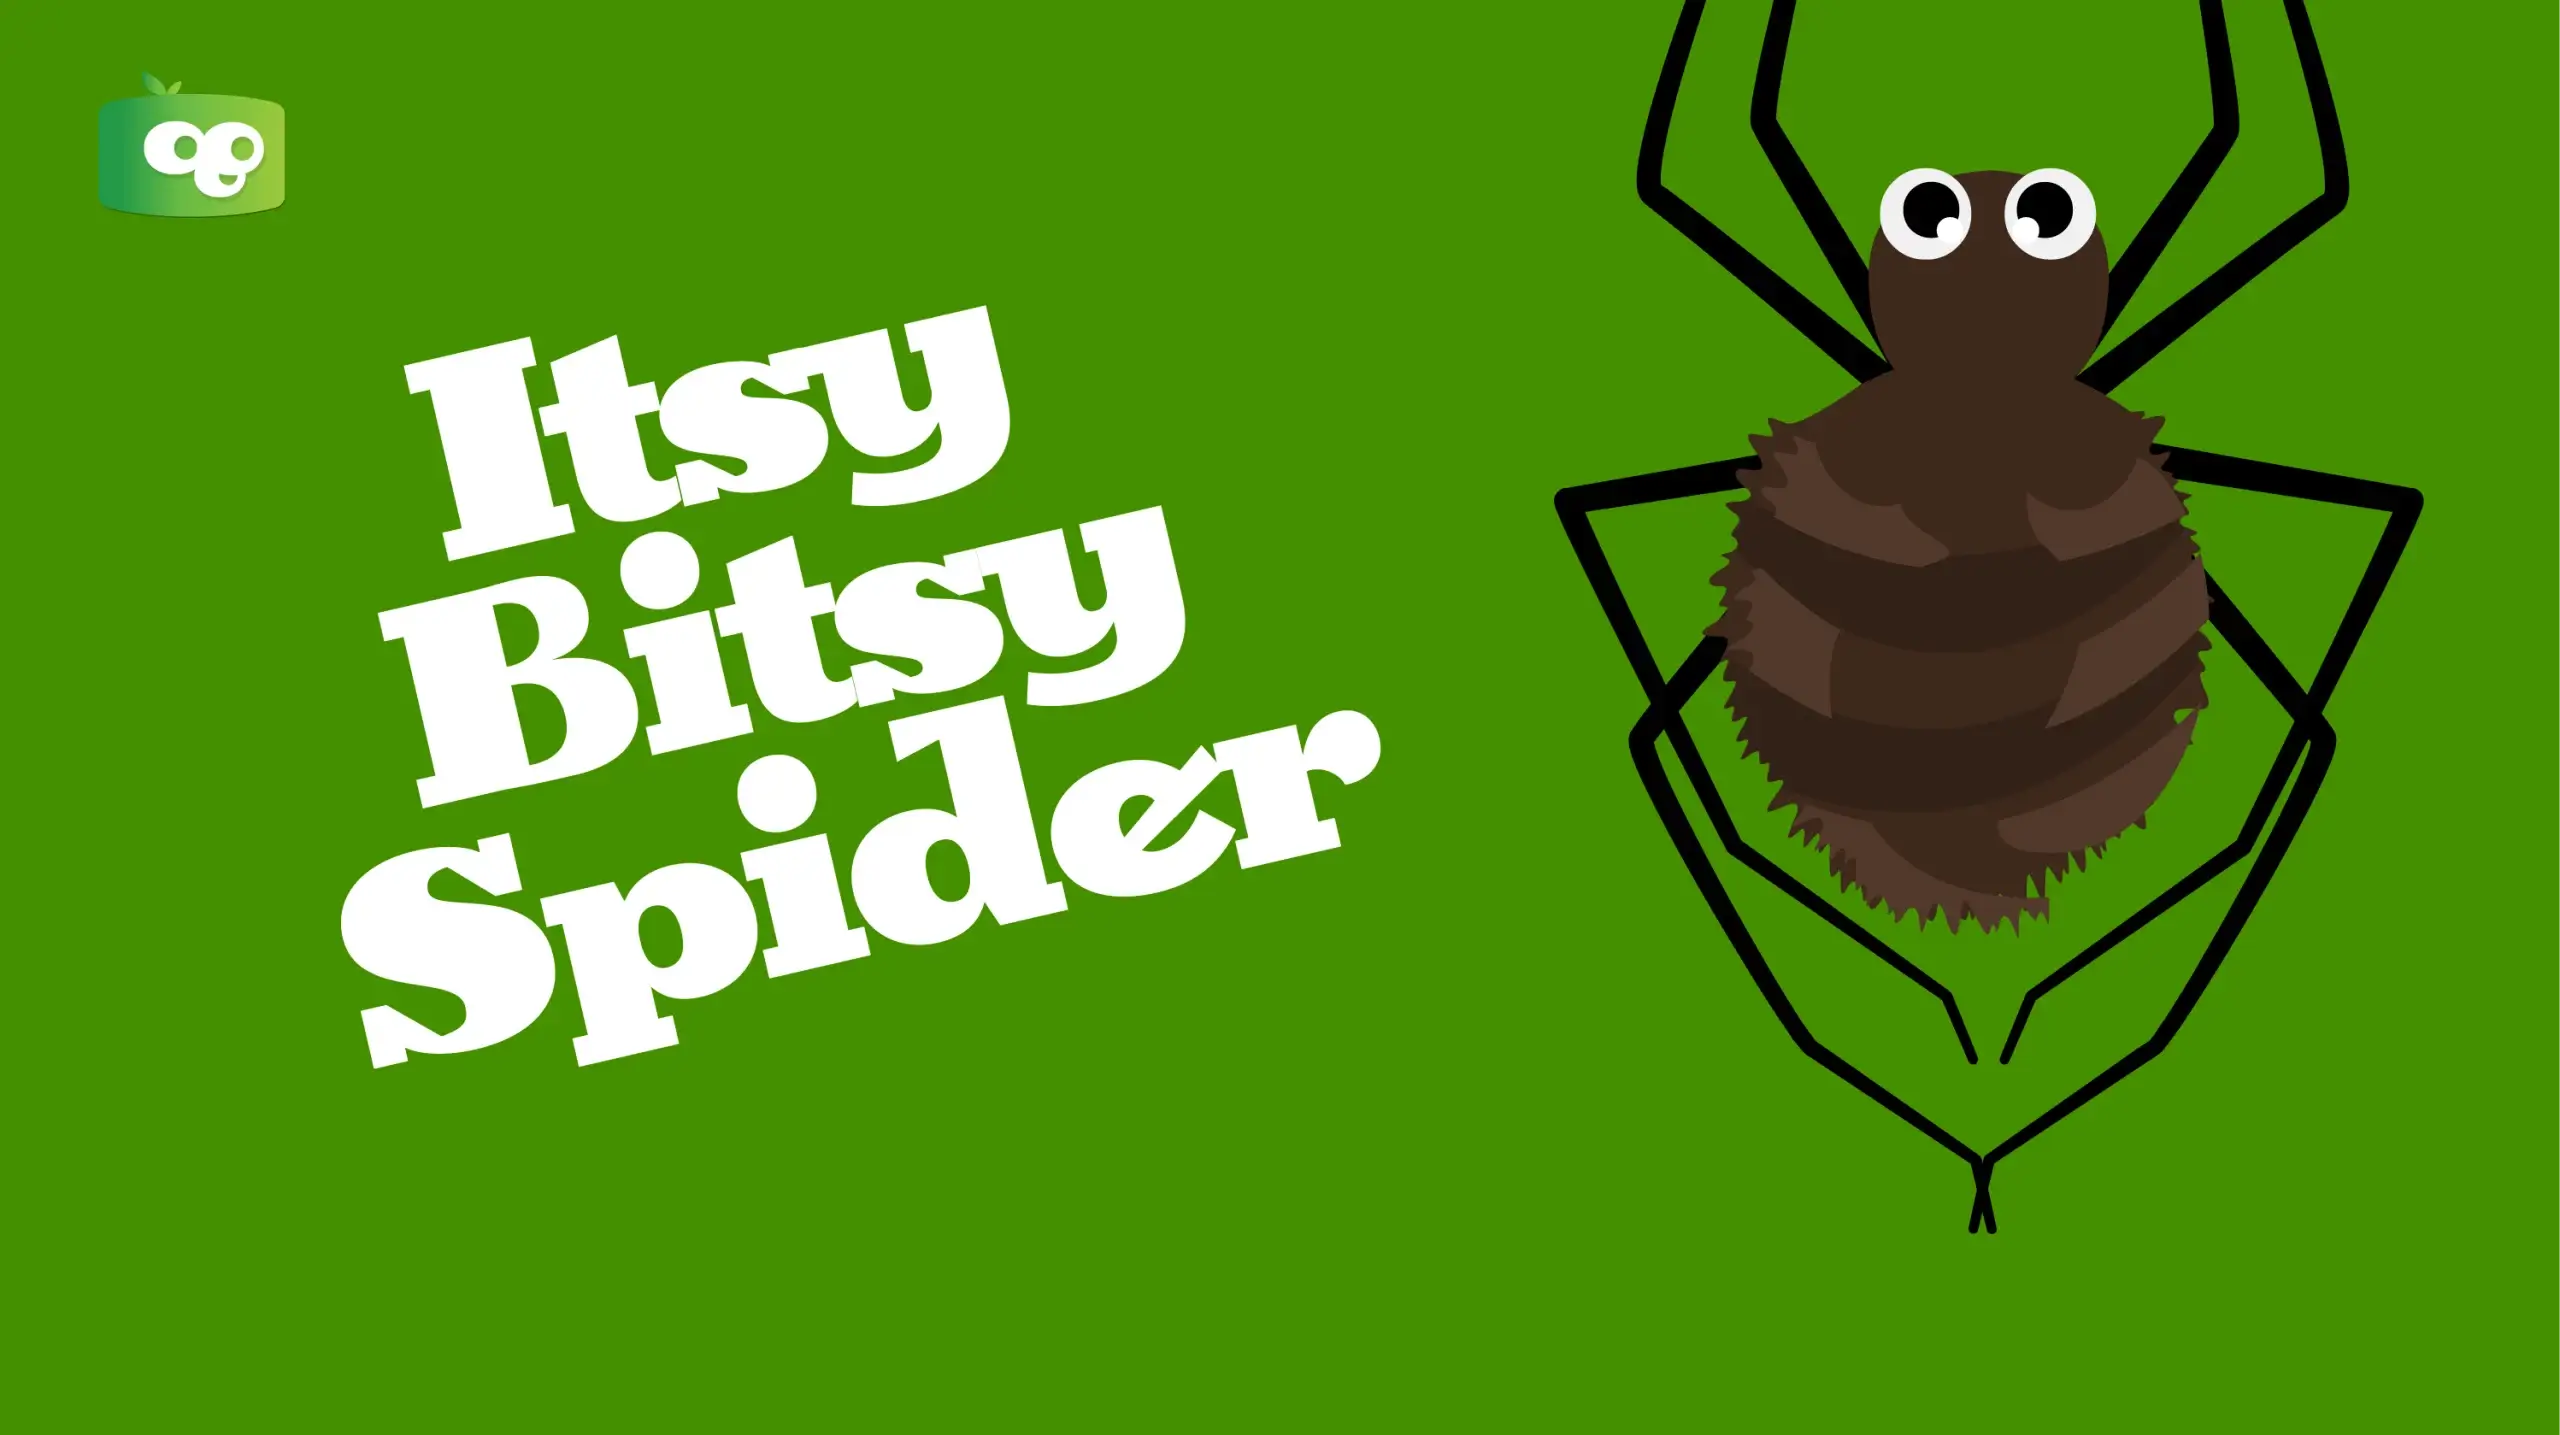 Itsy Bitsy Spider Video, Lyrics, and History